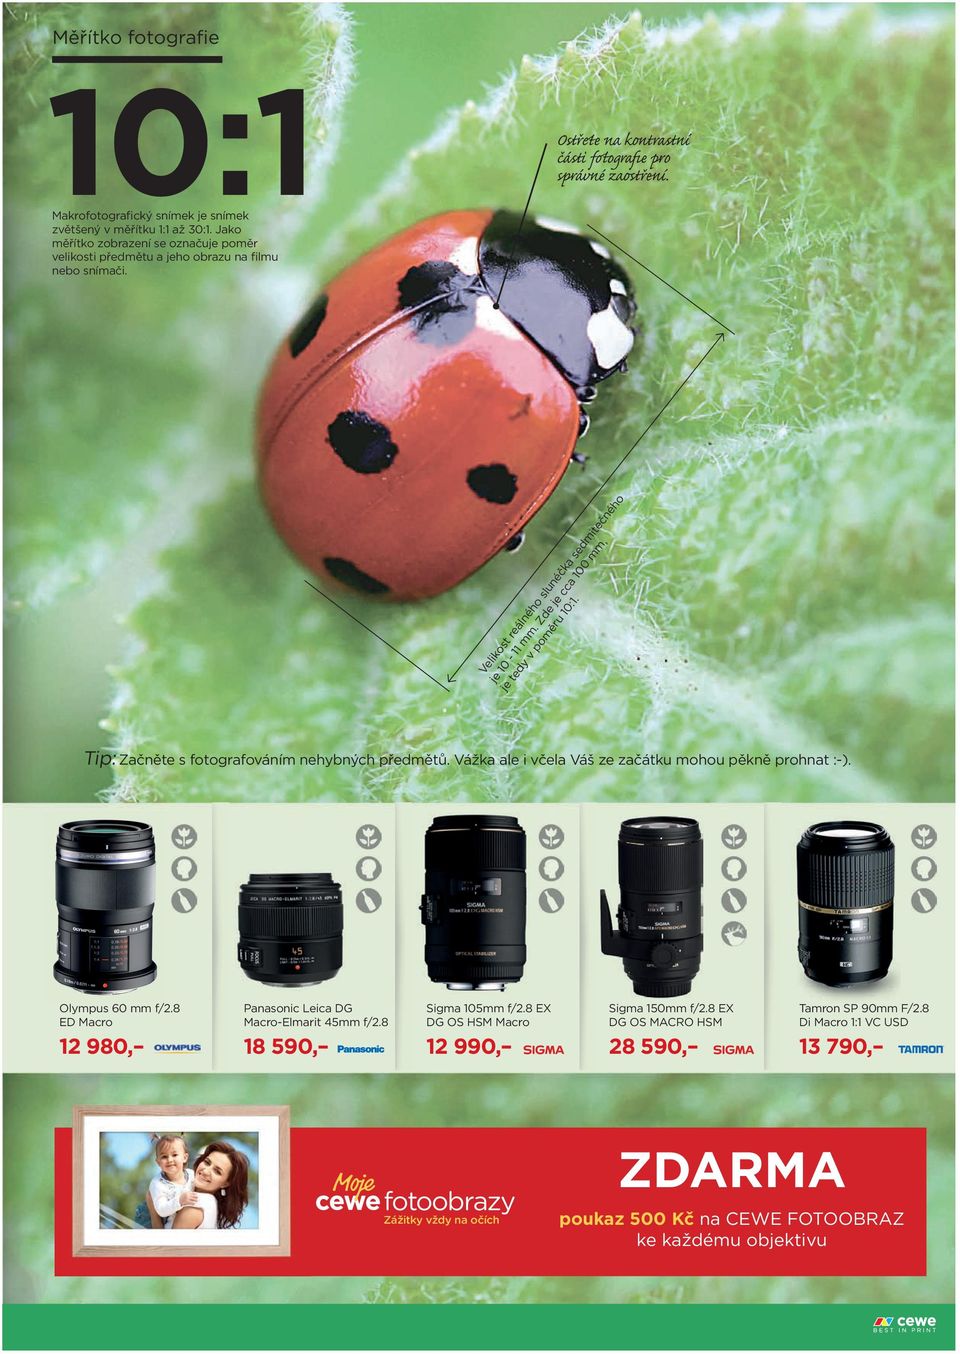 Tip: Začněte s fotografováním nehybných předmětů. Vážka ale i včela Váš ze začátku mohou pěkně prohnat :-). Olympus 60 mm f/2.8 ED Macro Panasonic Leica DG Macro-Elmarit 45mm f/2.